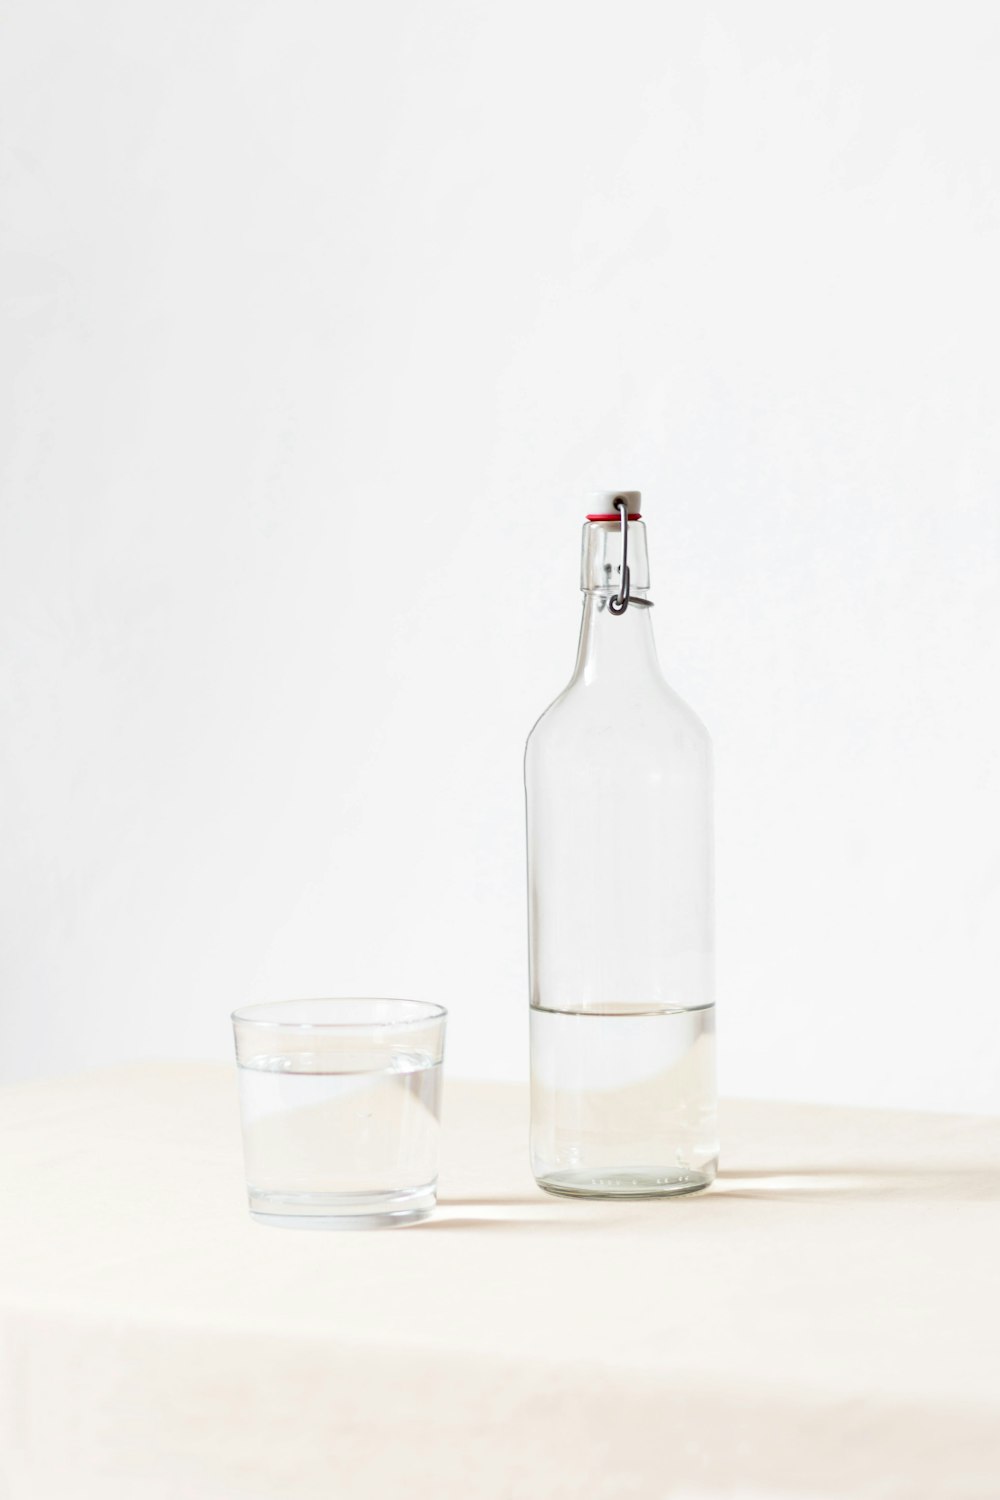 verre de roches à côté d'une bouteille à moitié vide sur une surface blanche